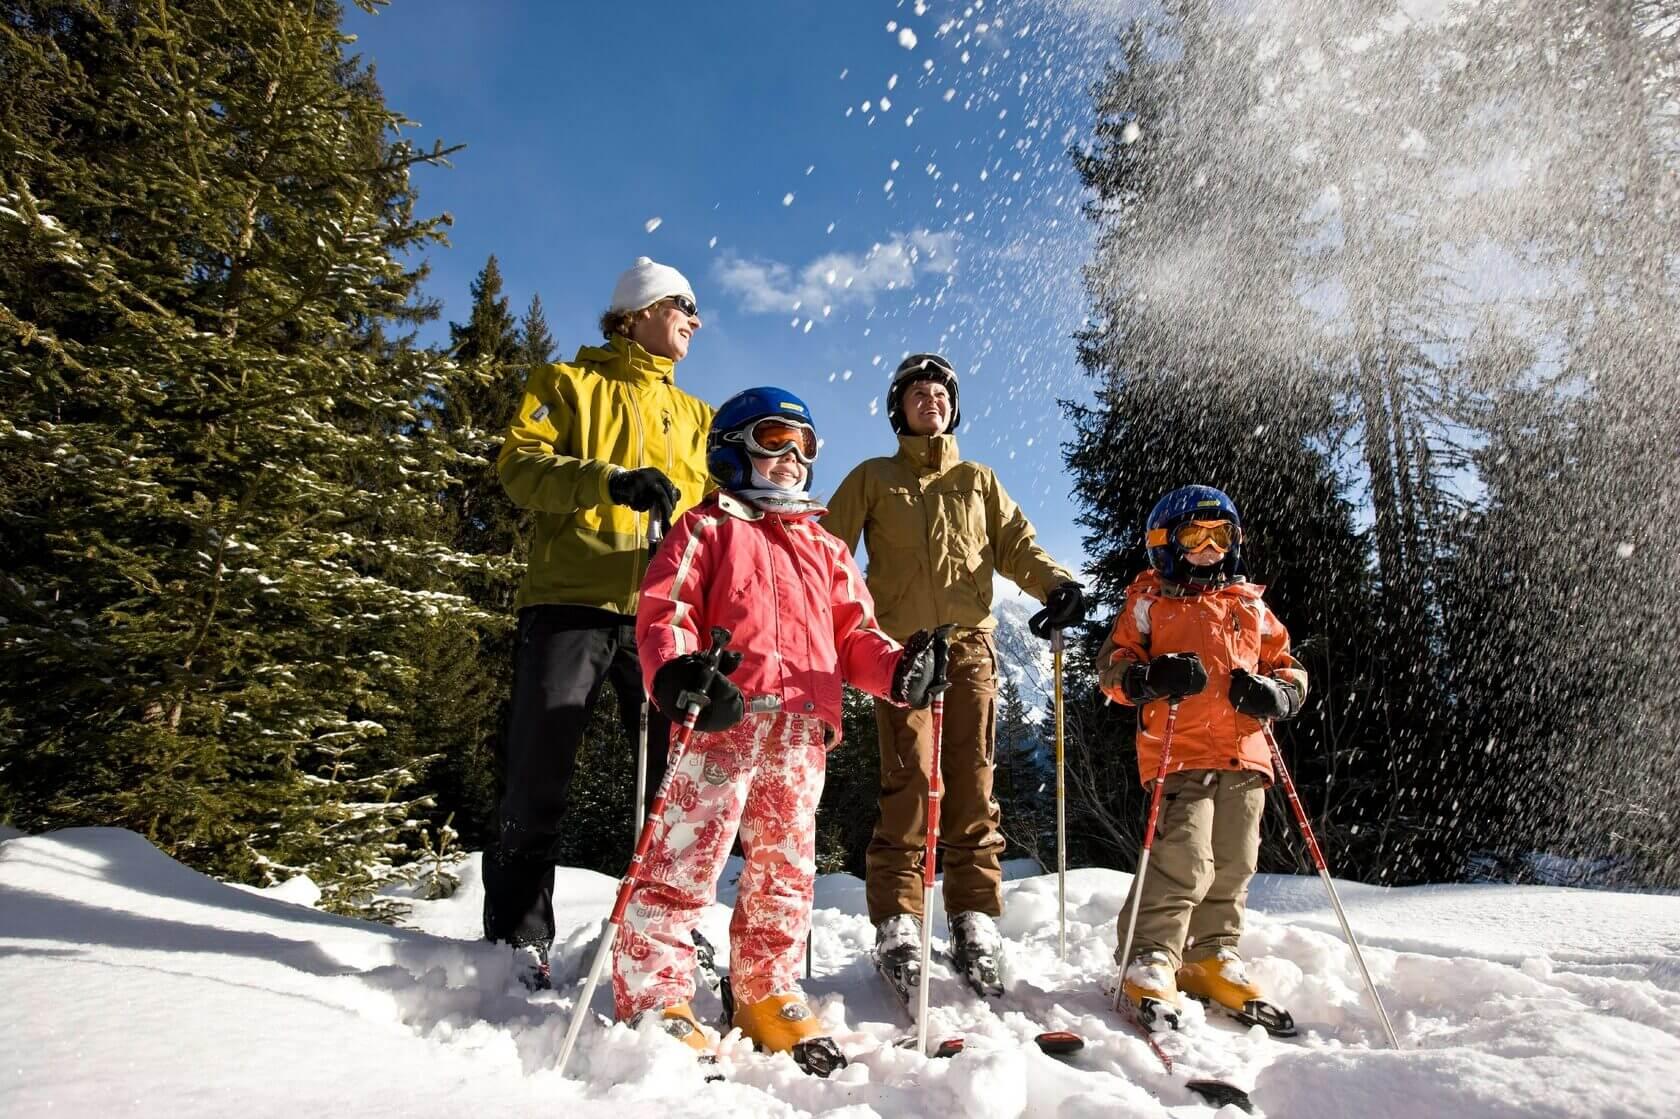 картинки : снег, зима, тень, горнолыжный спорт, спортивный инвентарь,  зимний вид спорта, виды спорта, Горы, Спуск, Лыжи, обувь, Лыжники, Бег на  лыжах, Нордические лыжи, Лыжный альпинизм, Лыжное снаряжение, Телемарк  2592x3872 - -